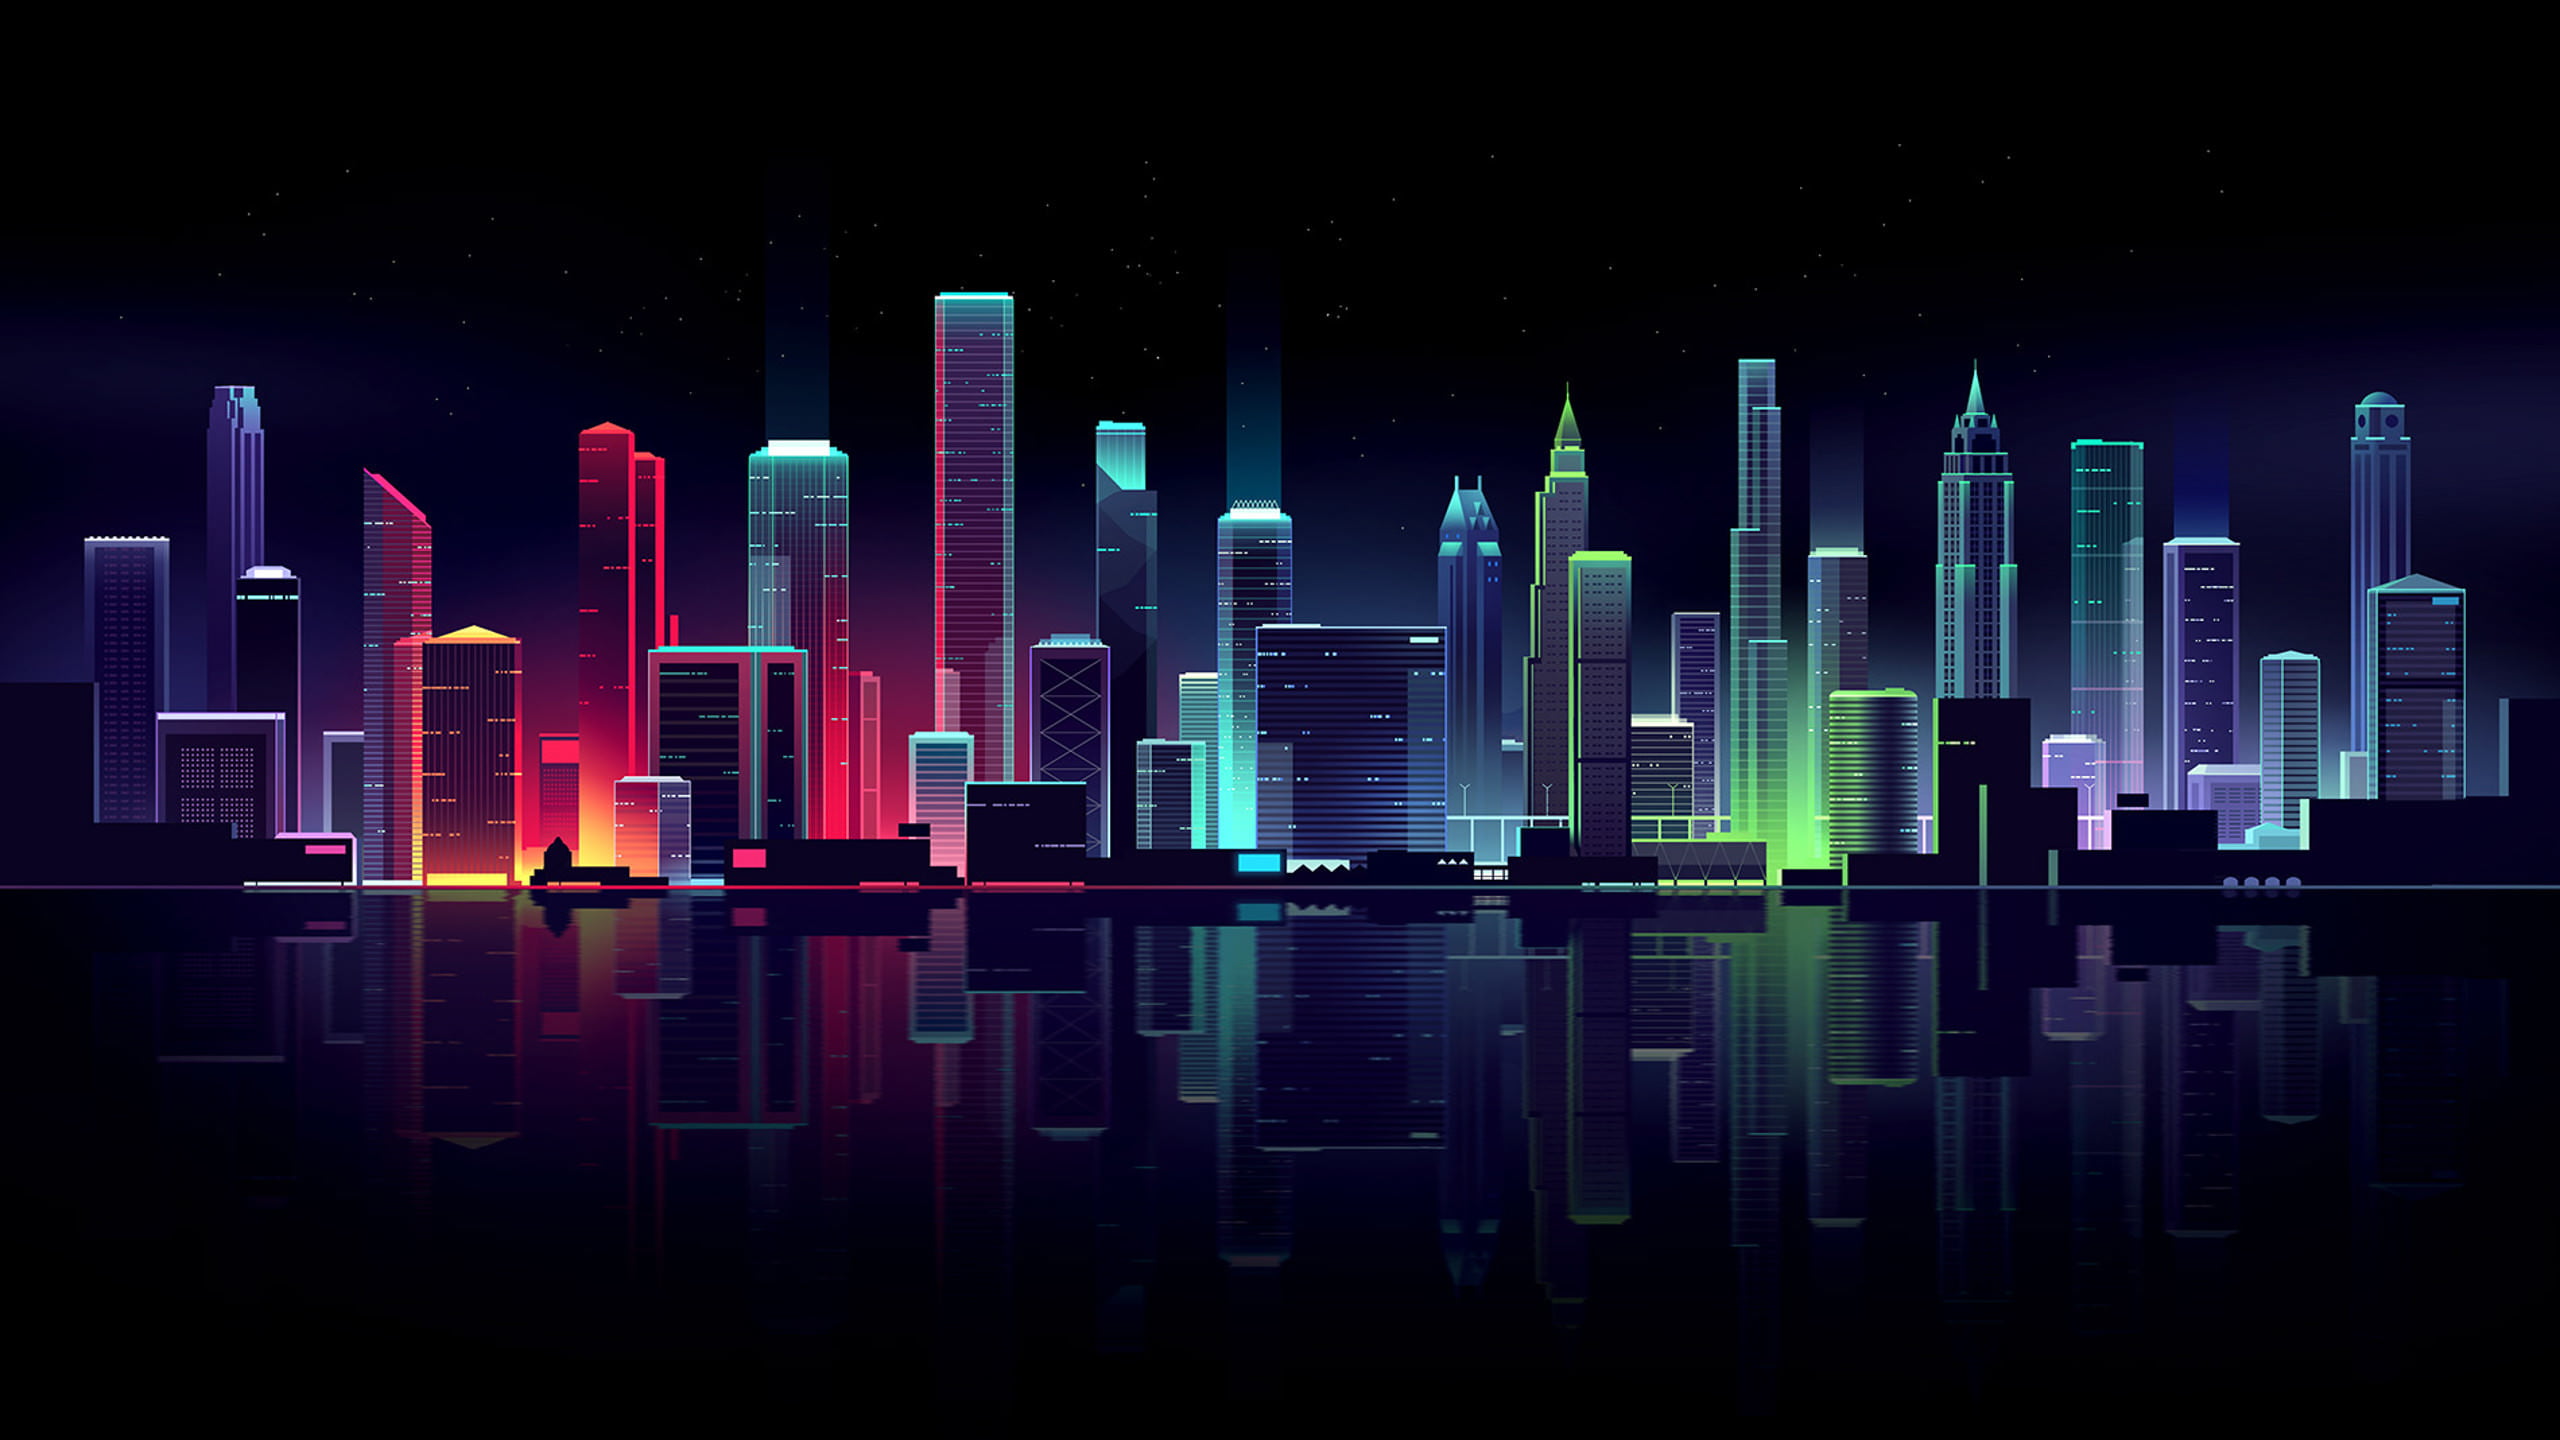 Retro Neon City, neon, digital art, dark, futuristic city